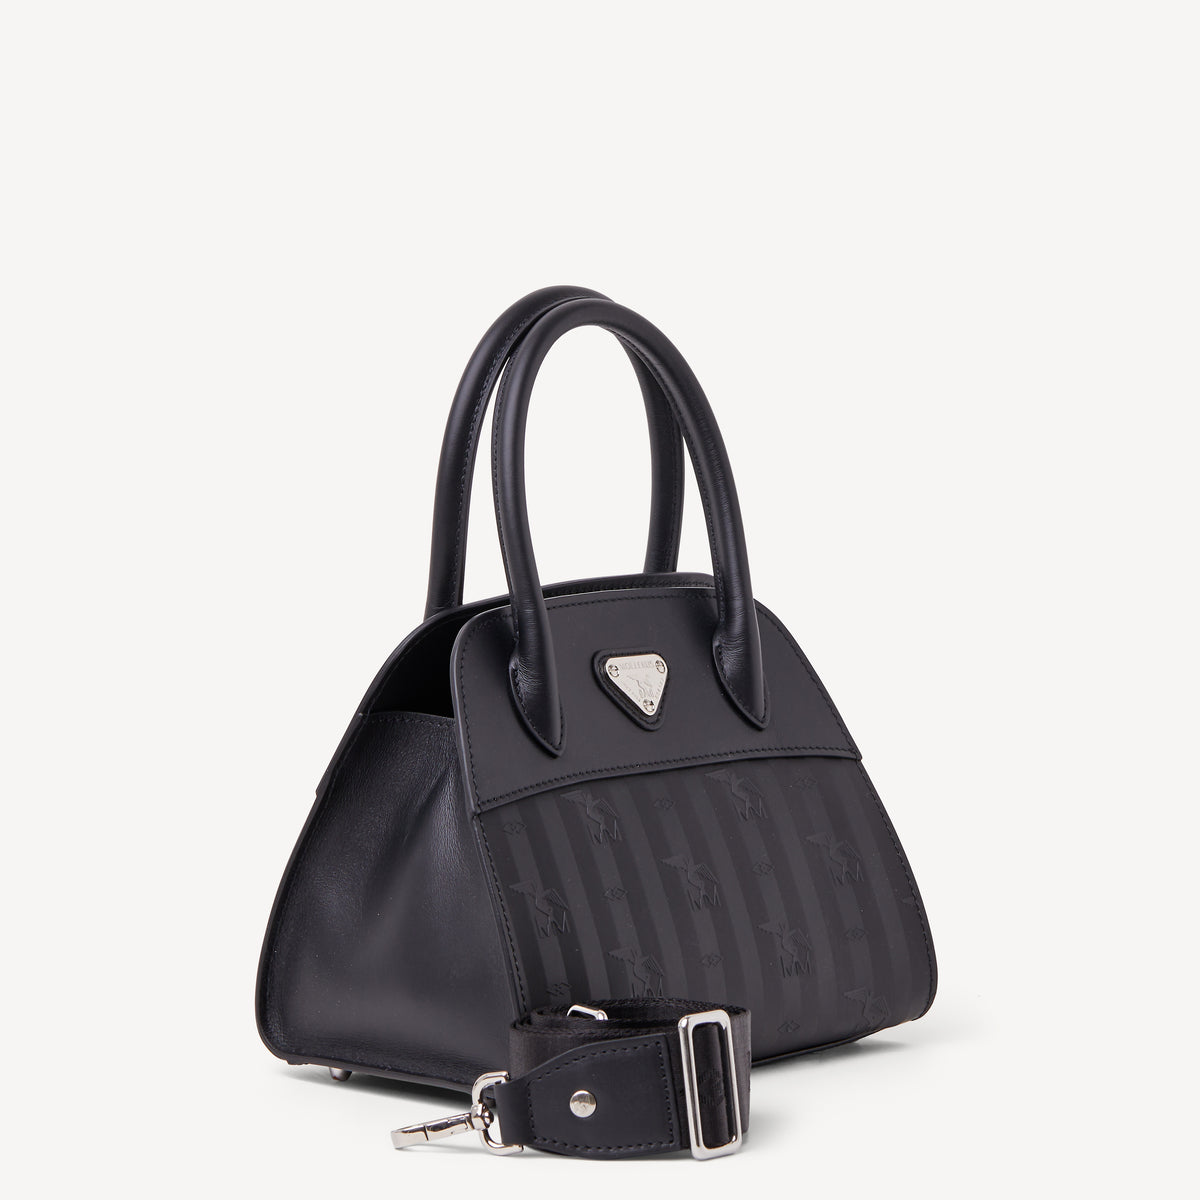 SOGLIO | Handtasche classic schwarz/silber - seitlich